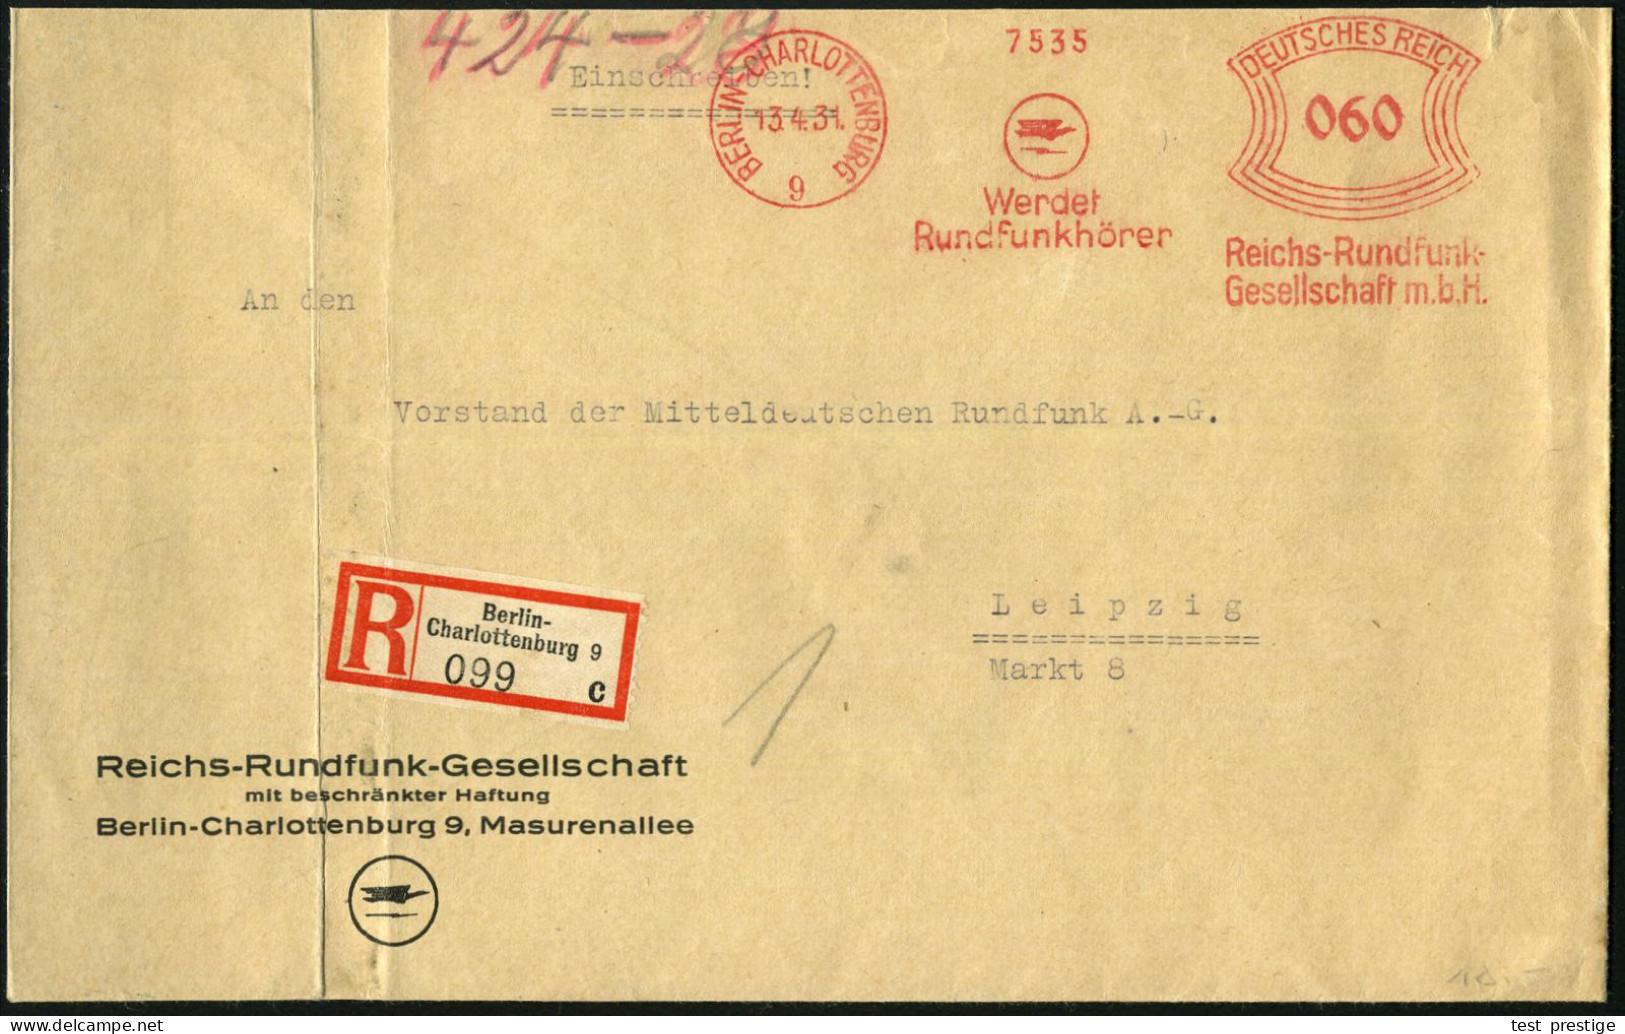 BERLIN-CHARLOTTENBURG/ 9/ Werdet/ Rundfunkhörer/ Reichs-Rundfunk-/ GmbH 1931 (13.4.) AFS Francotyp 060 Pf. (Logo) Auf Mo - Otros